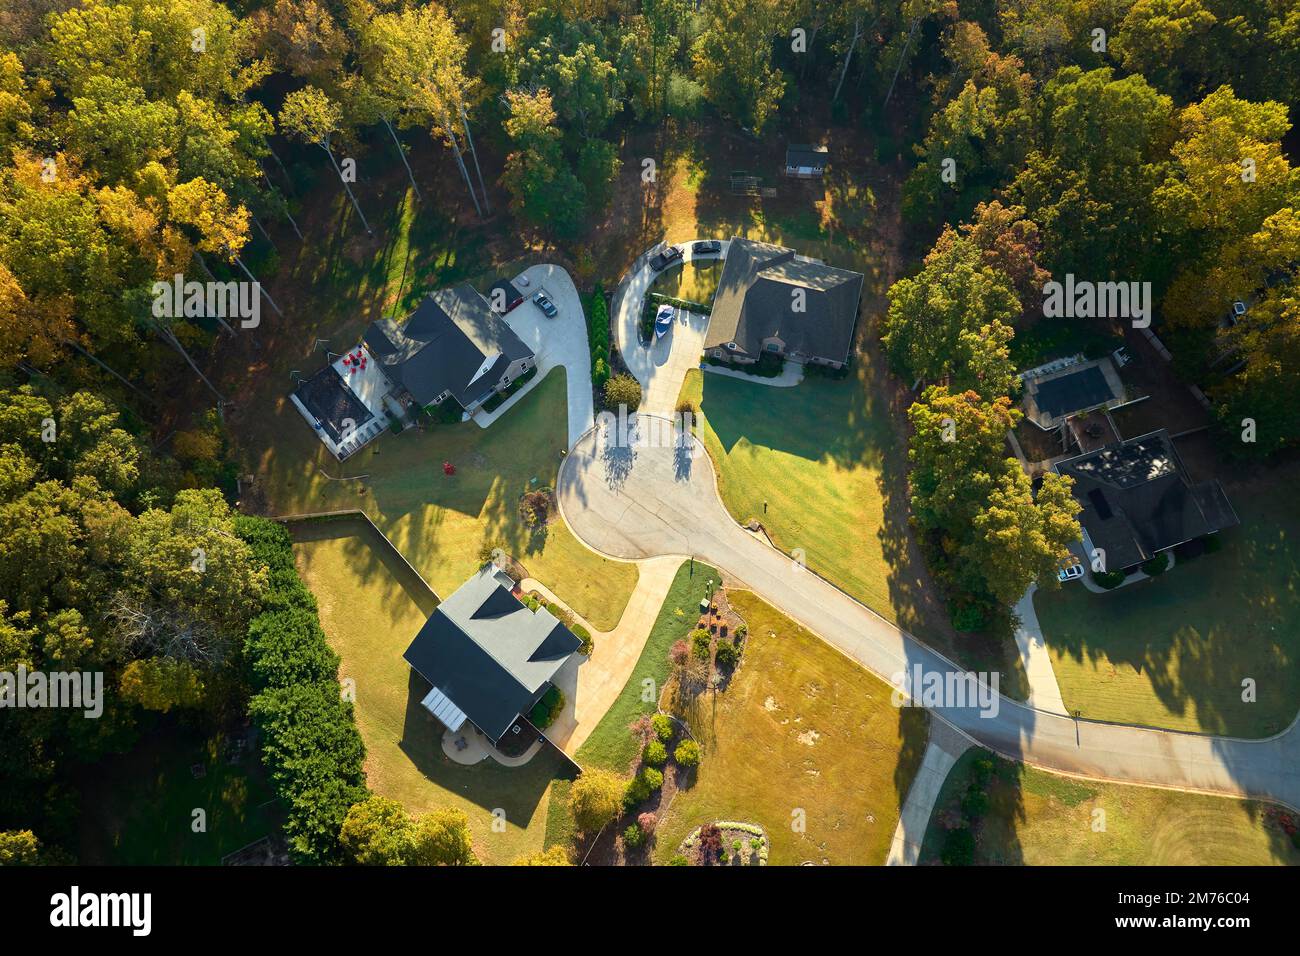 Vista aerea delle case americane classiche nella zona residenziale del South Carolina. Nuove case di famiglia come esempio di sviluppo immobiliare nella periferia degli Stati Uniti Foto Stock